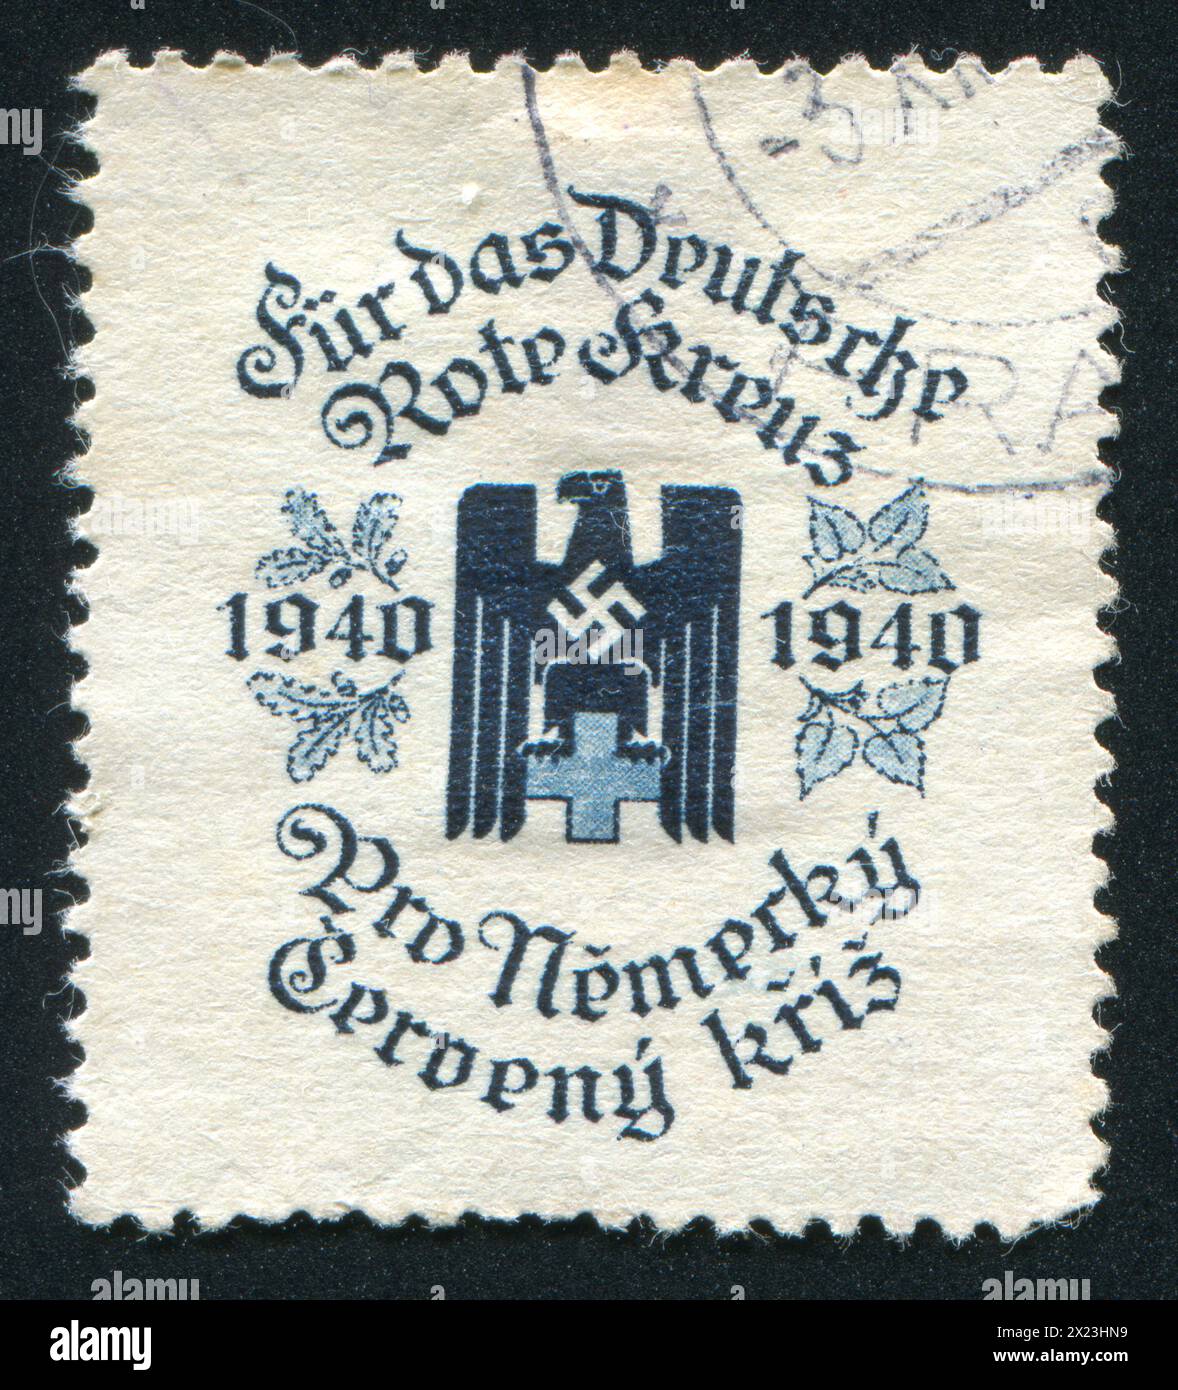 TCHÉCOSLOVAQUIE - VERS 1940 : timbre imprimé par la Tchécoslovaquie, représentant la Croix-Rouge allemande. Cette image n'est pas une propagande nazie, vers 1940 Banque D'Images